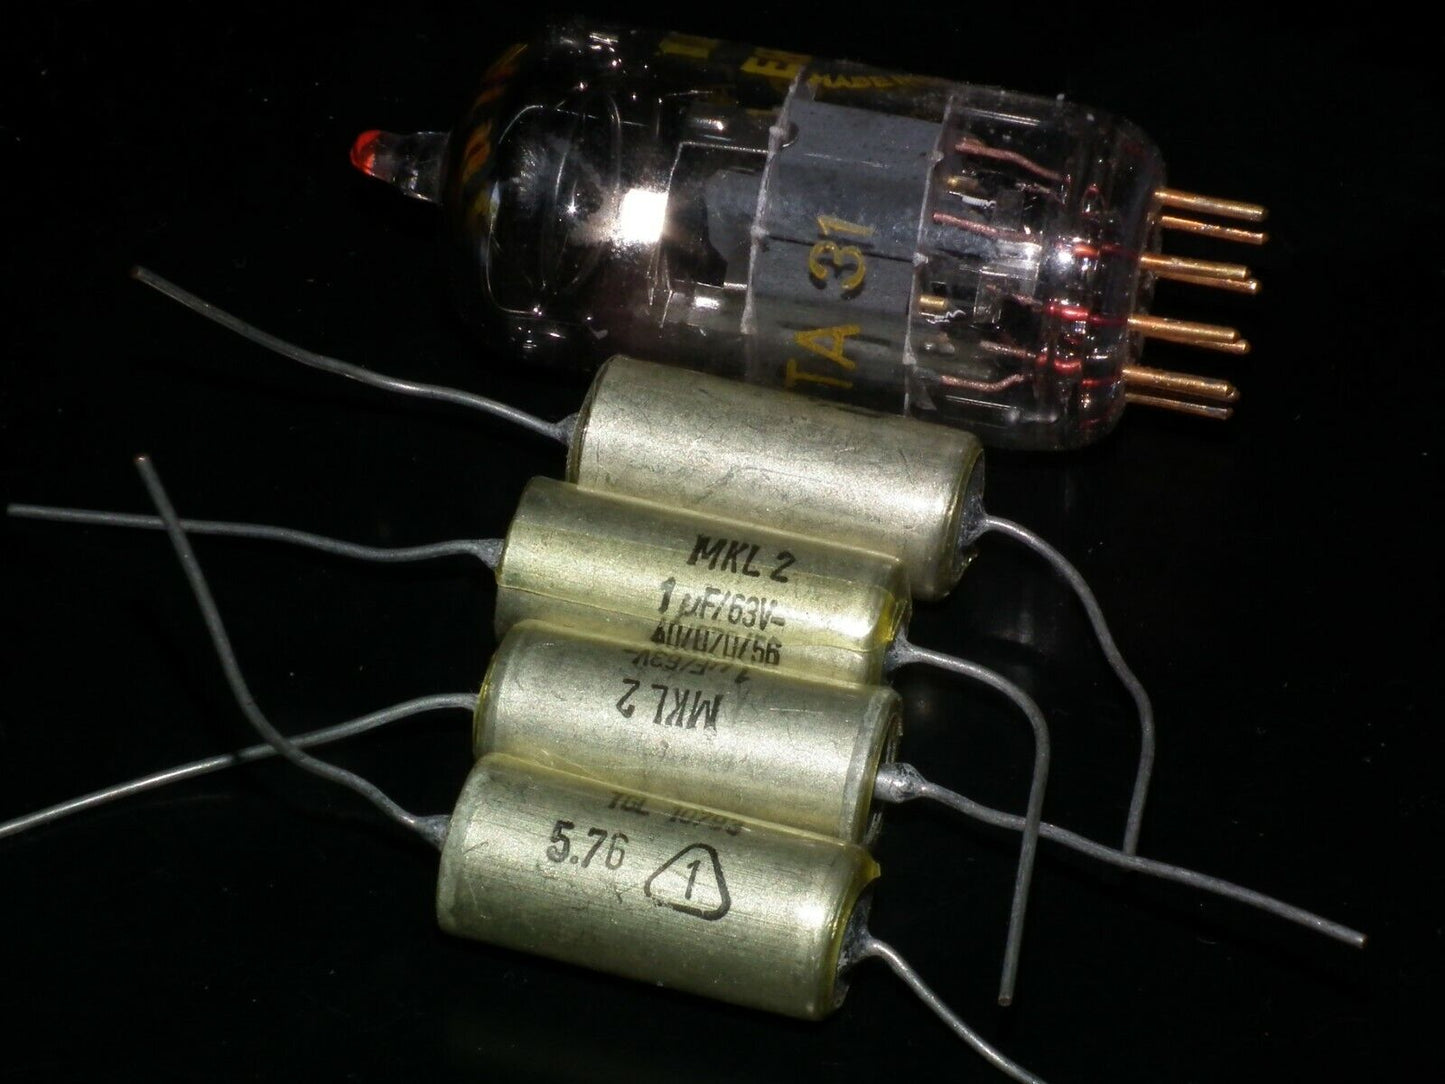 Four vintage NOS capacitors 1uF 63V MKL2 Made in West Germany in 1976 1mfd 63V